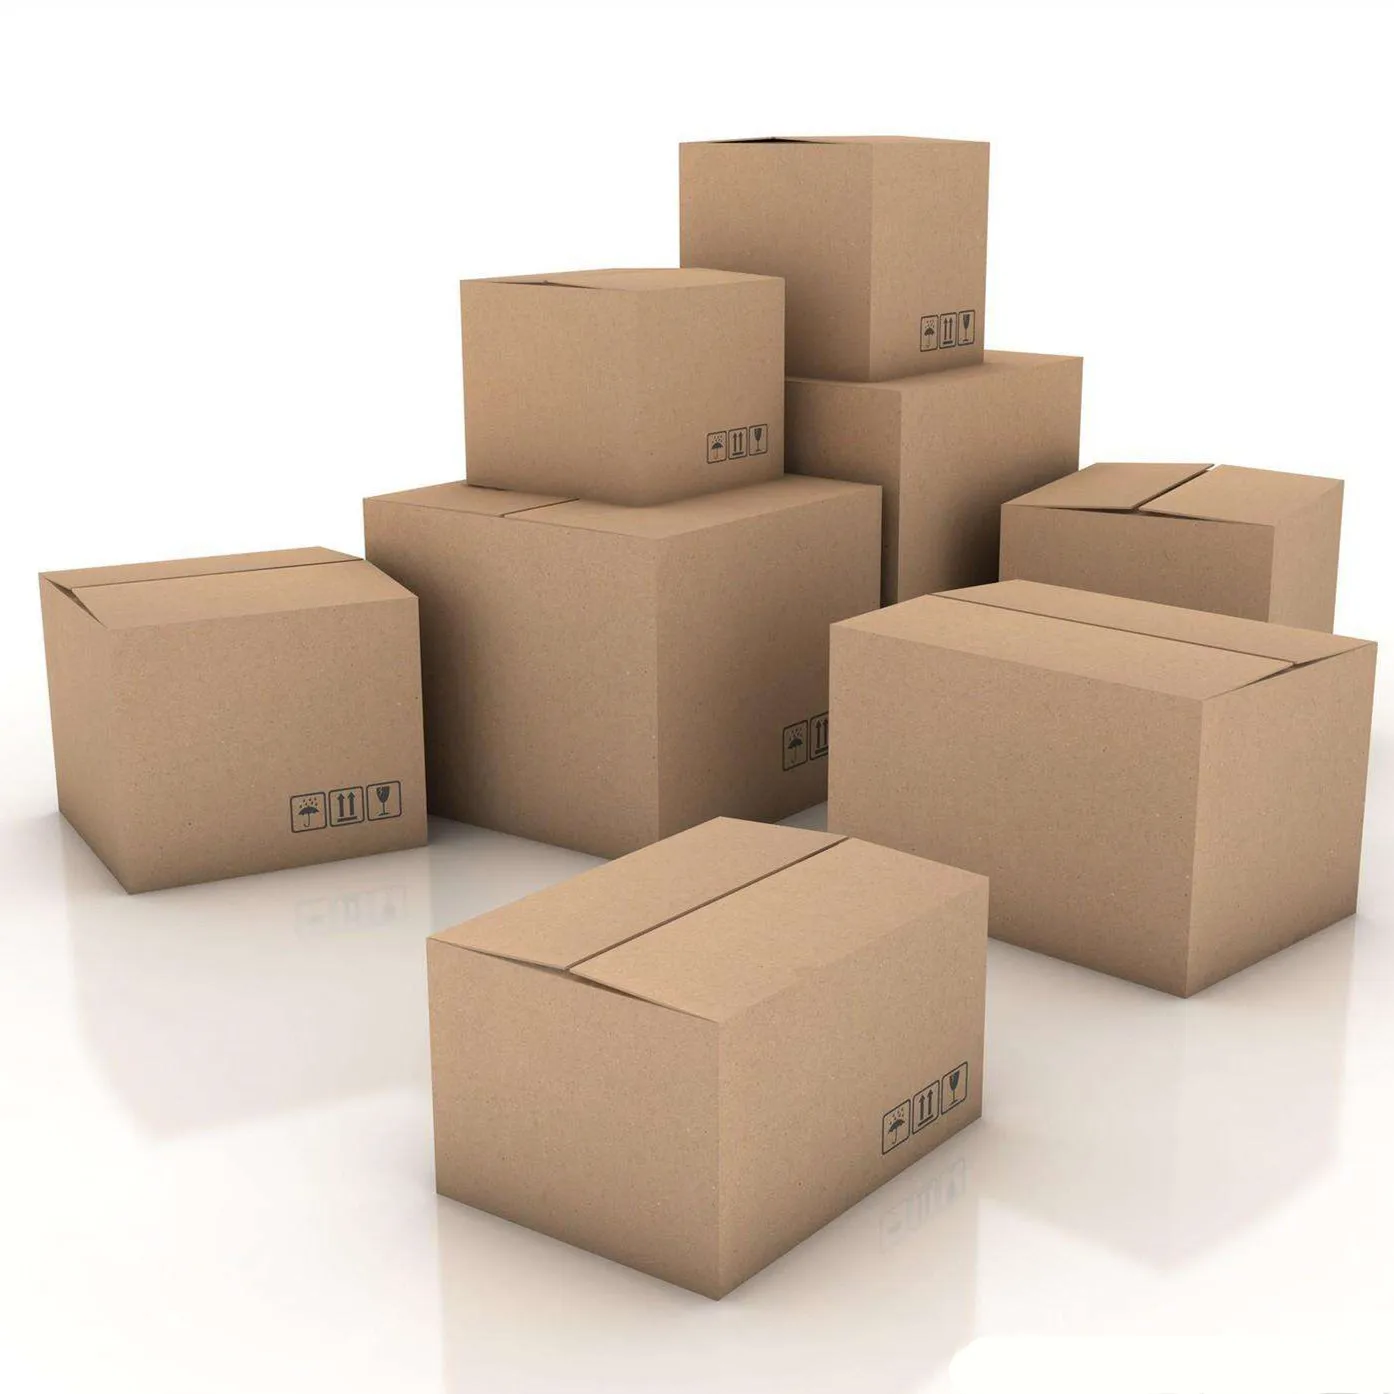 Non packaged. Коробки. Упаковка. Картонные коробки. Коробка для упаковки товара.